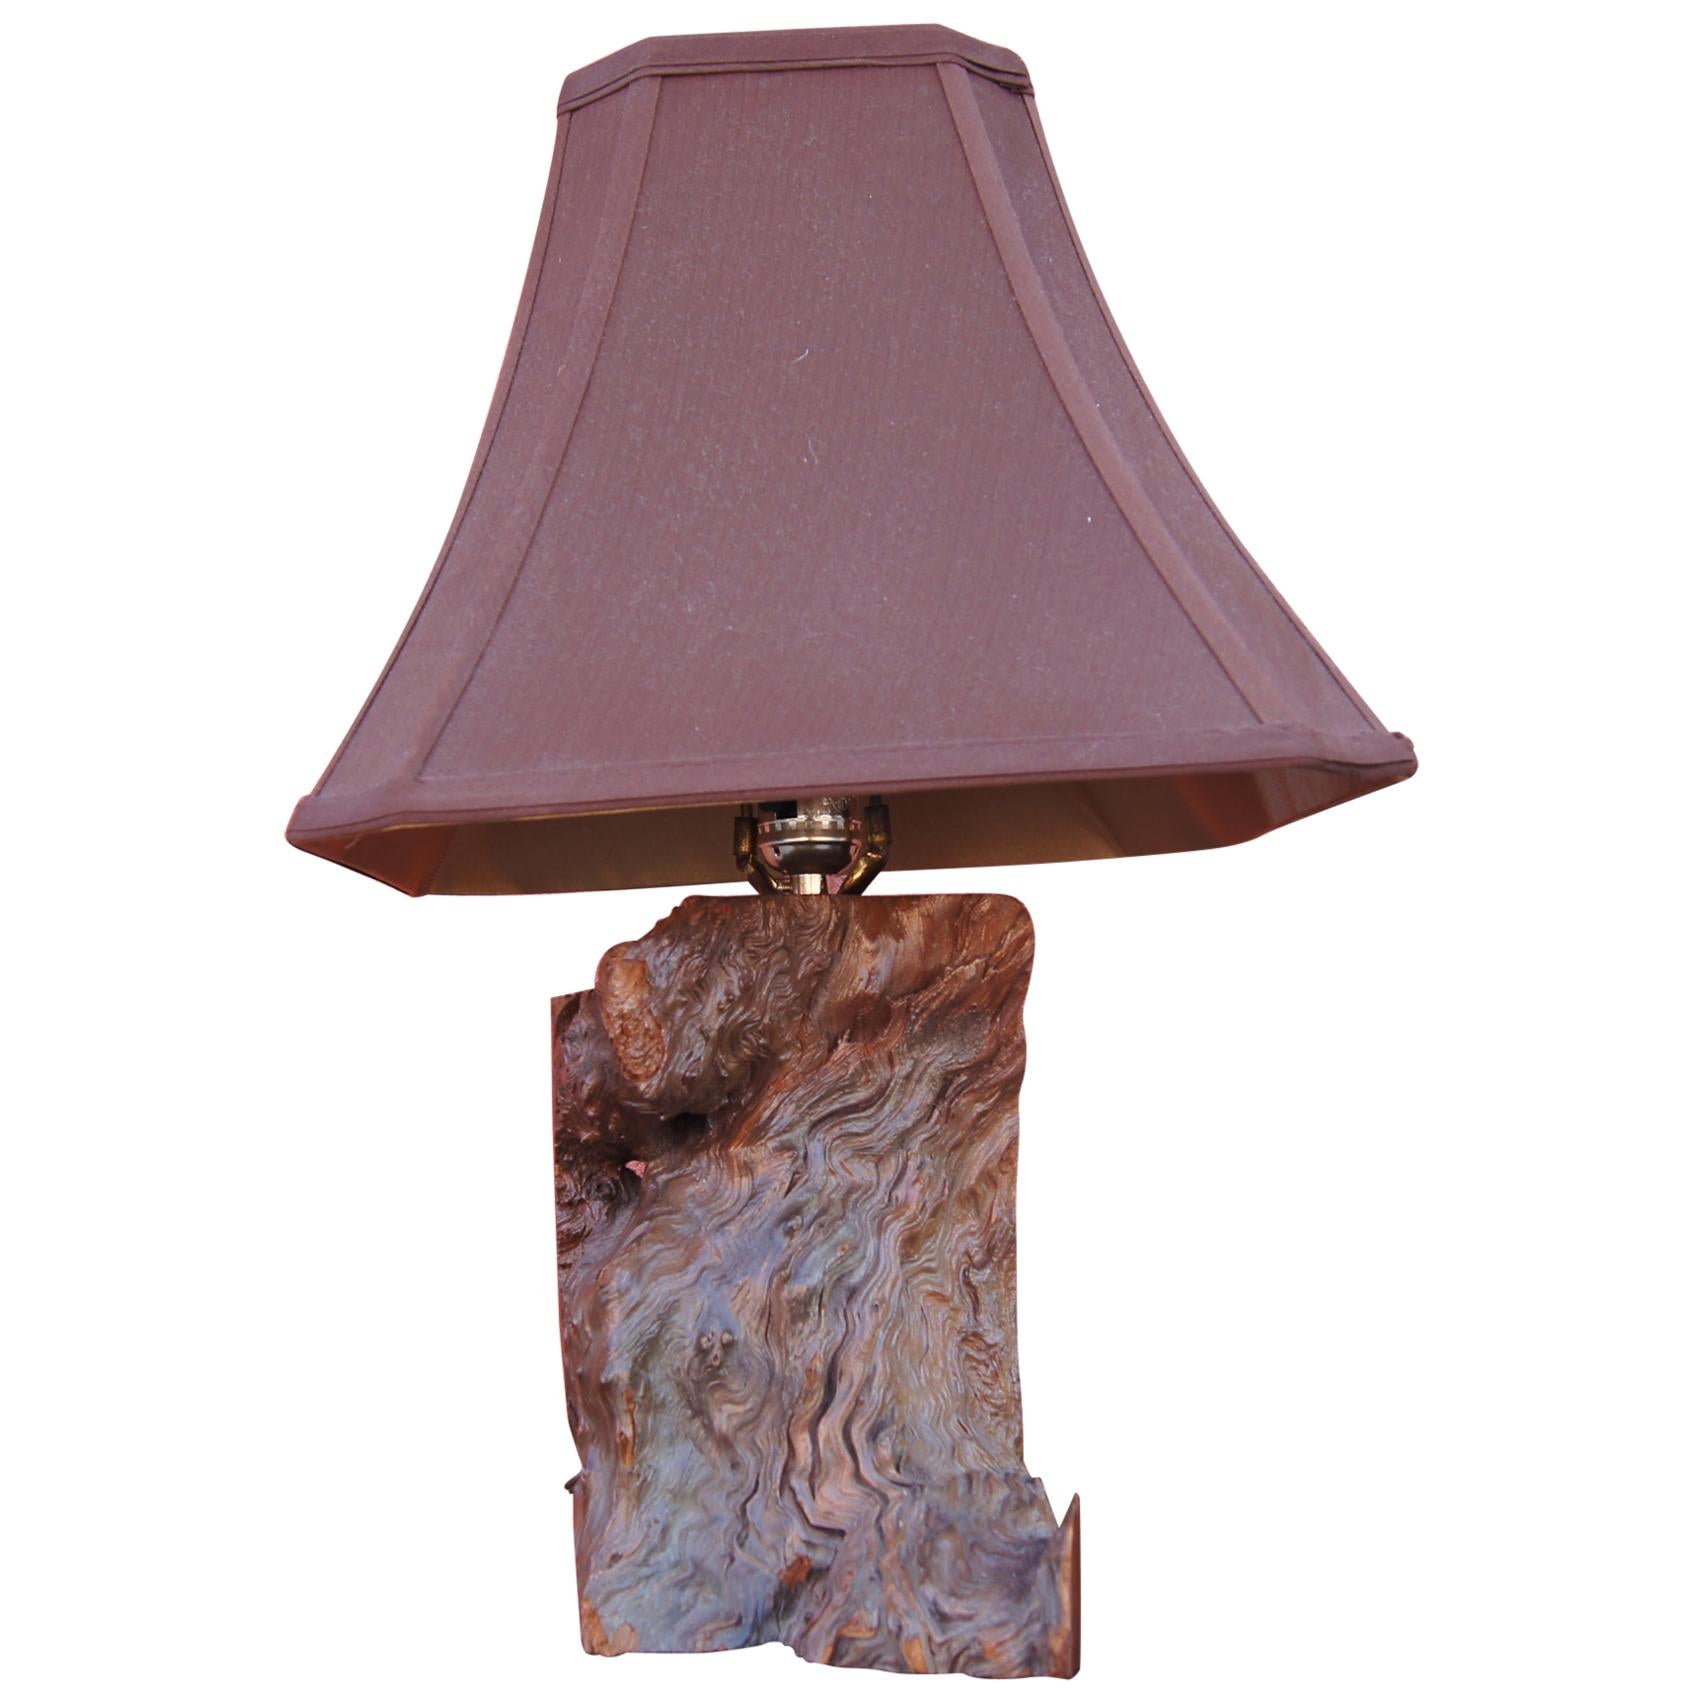 Midcentury Walnut Burl Table Lamp